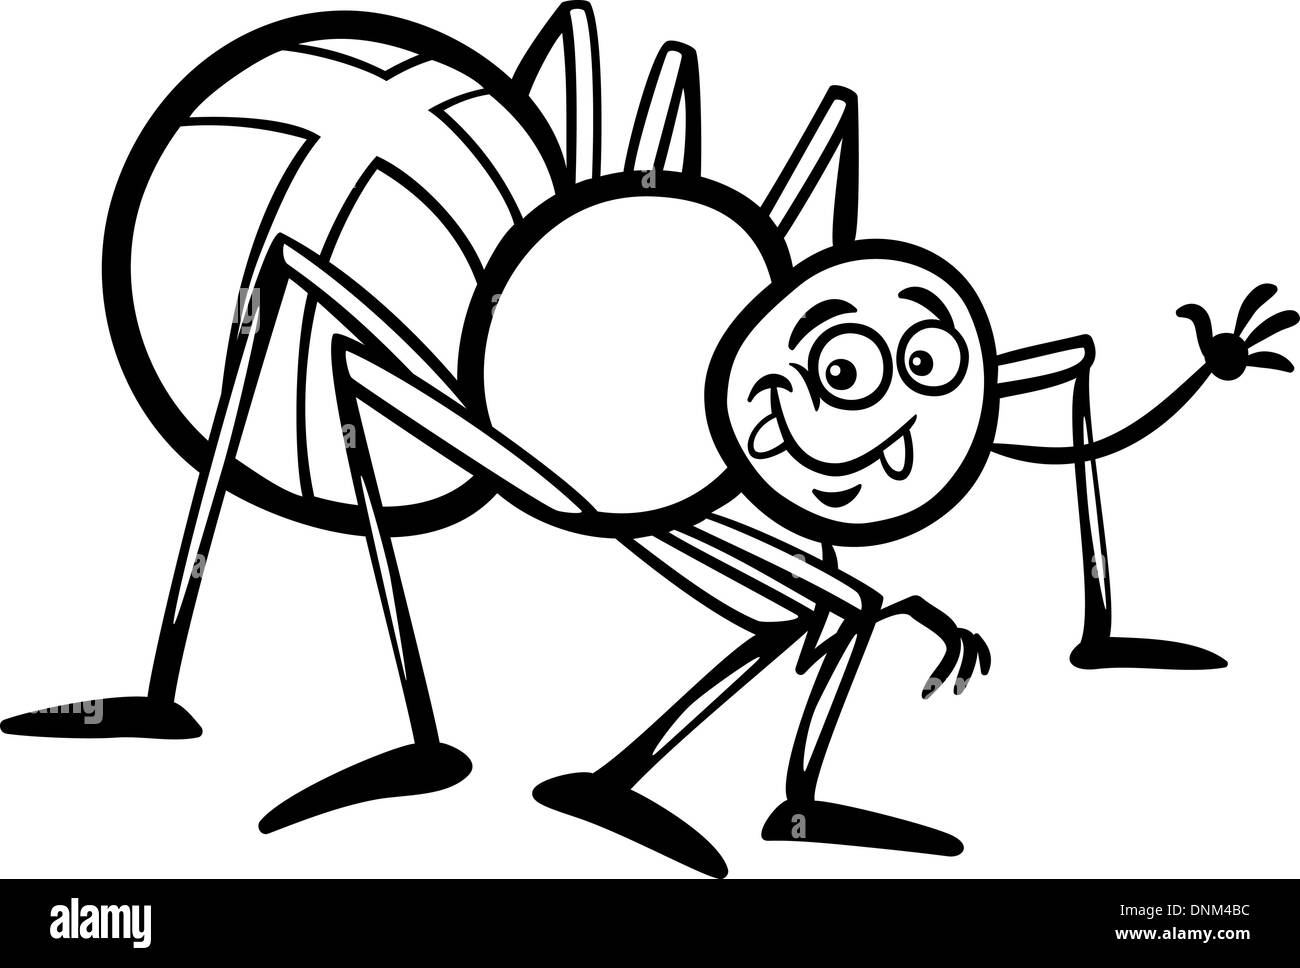 Schwarz / Weiß Cartoon Illustration lustig Kreuz Spinne Insekt zum Malbuch Stock Vektor